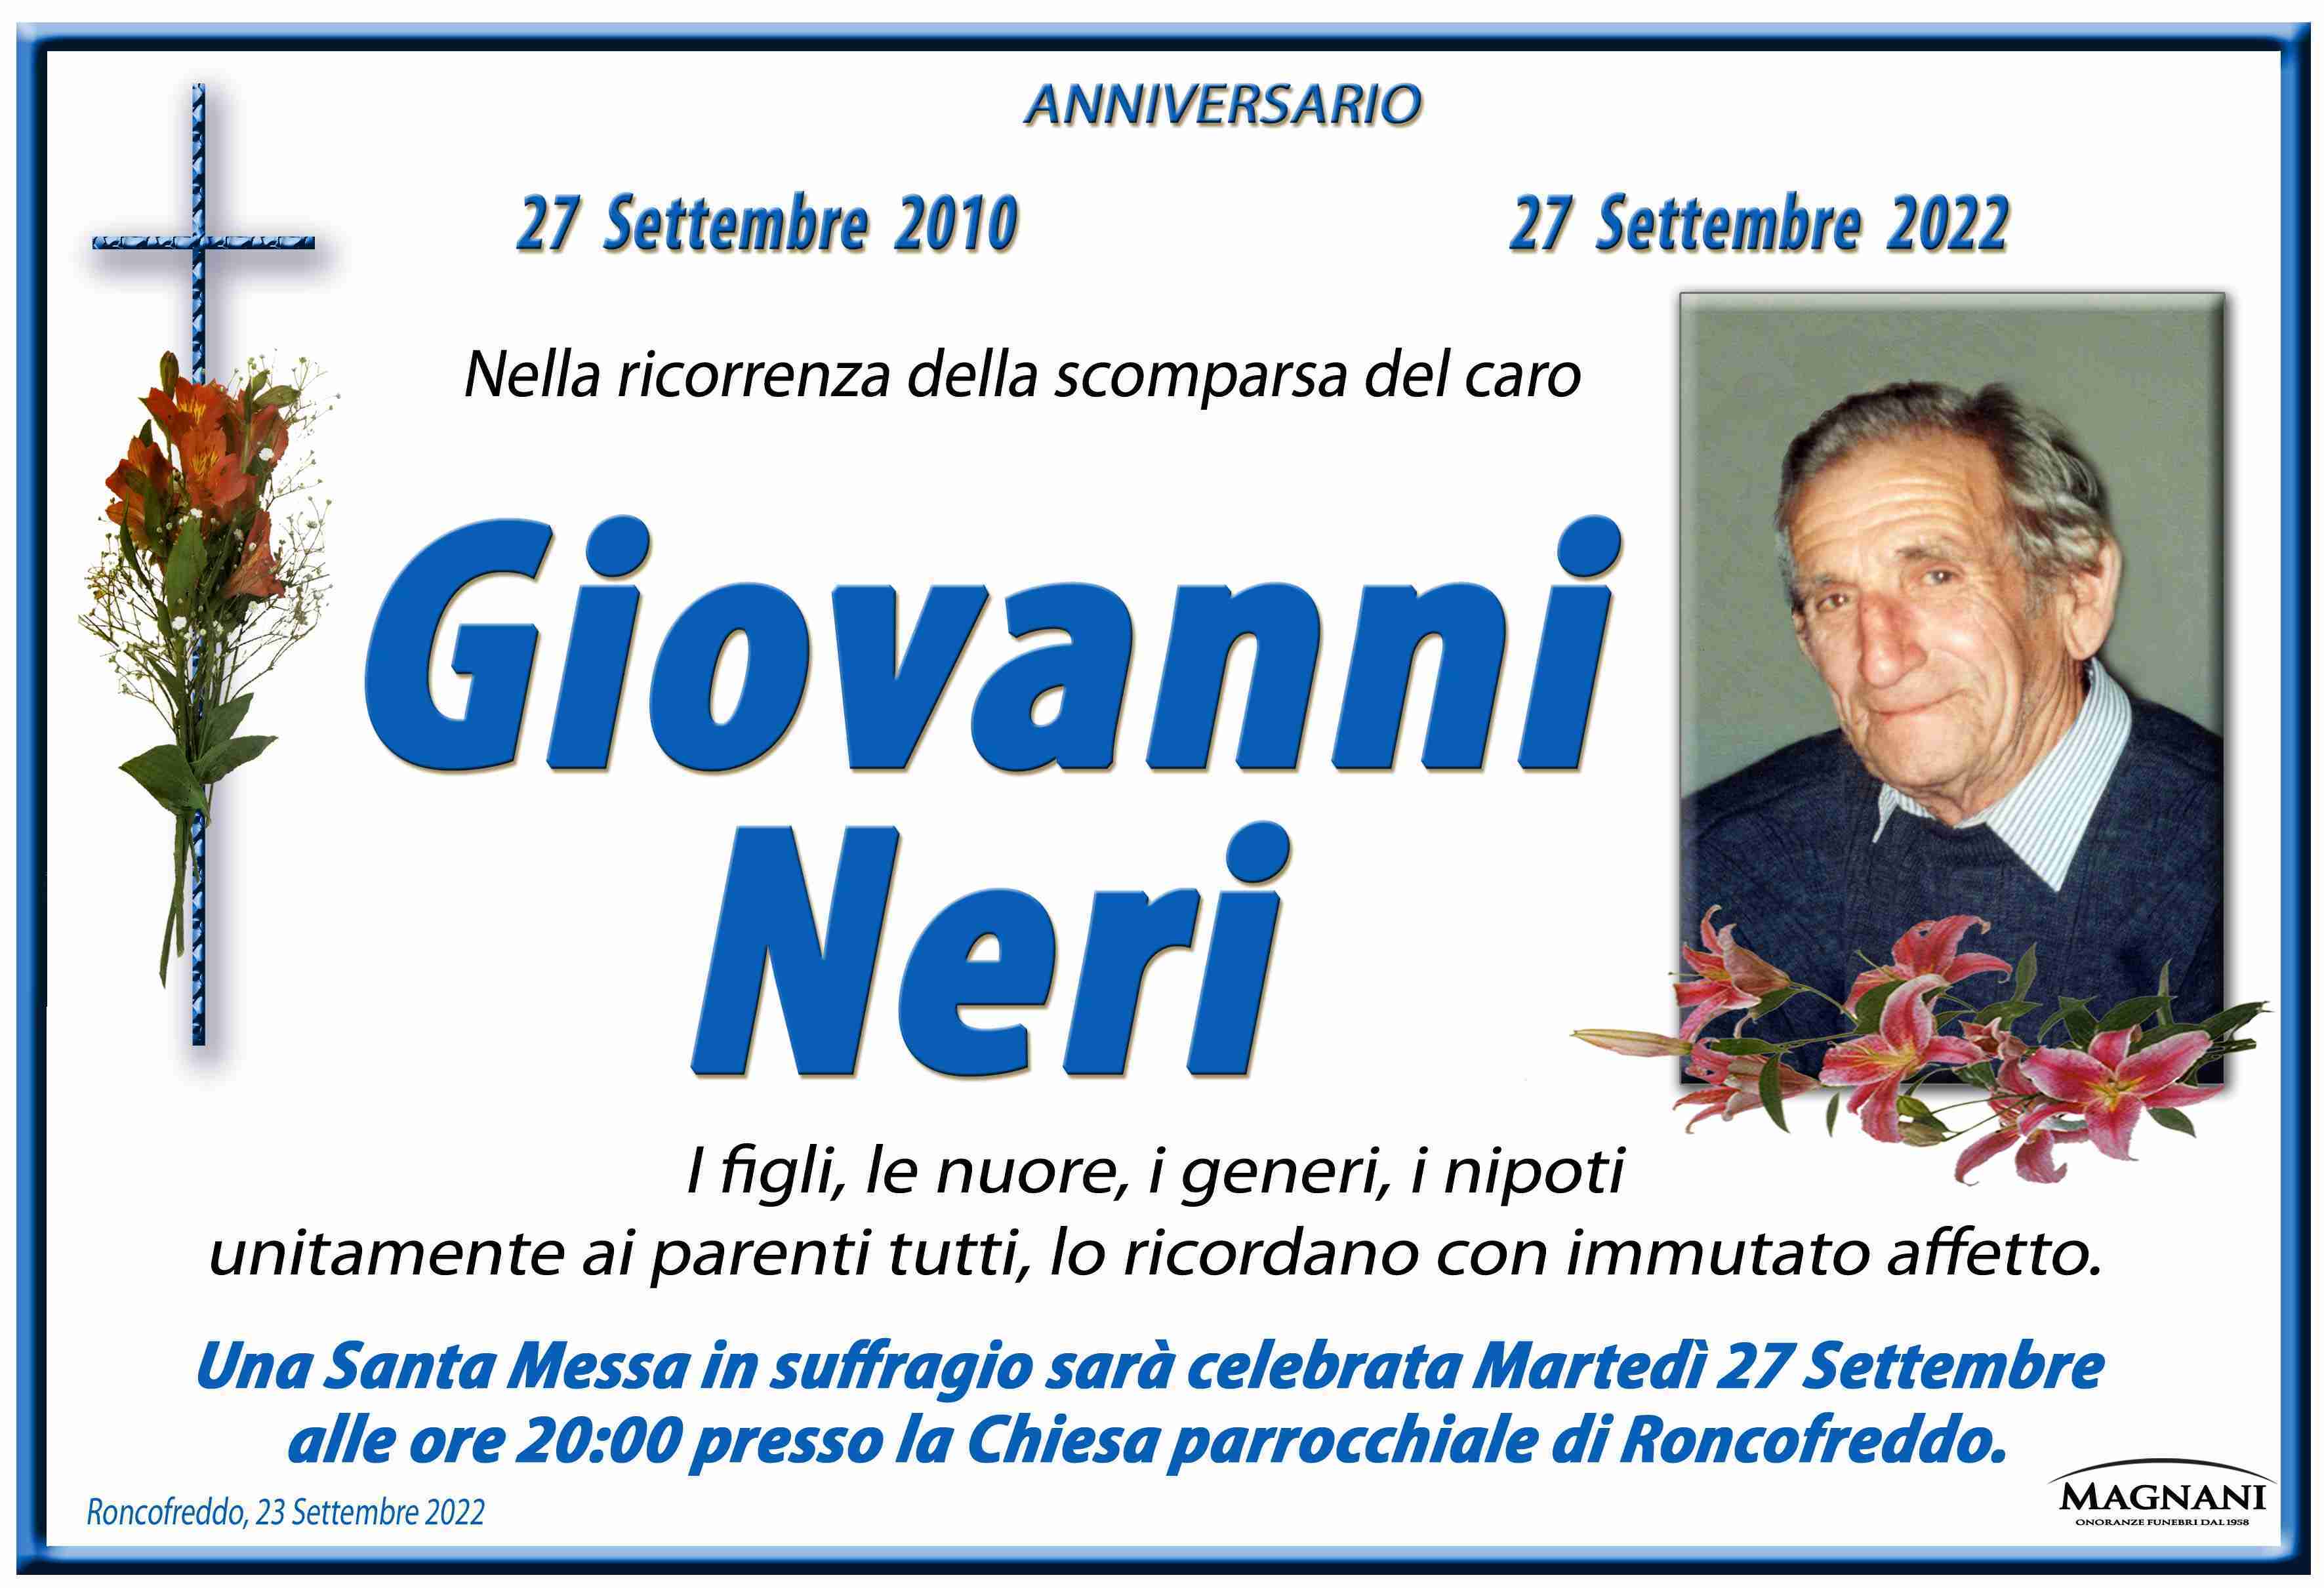 Giovanni Neri